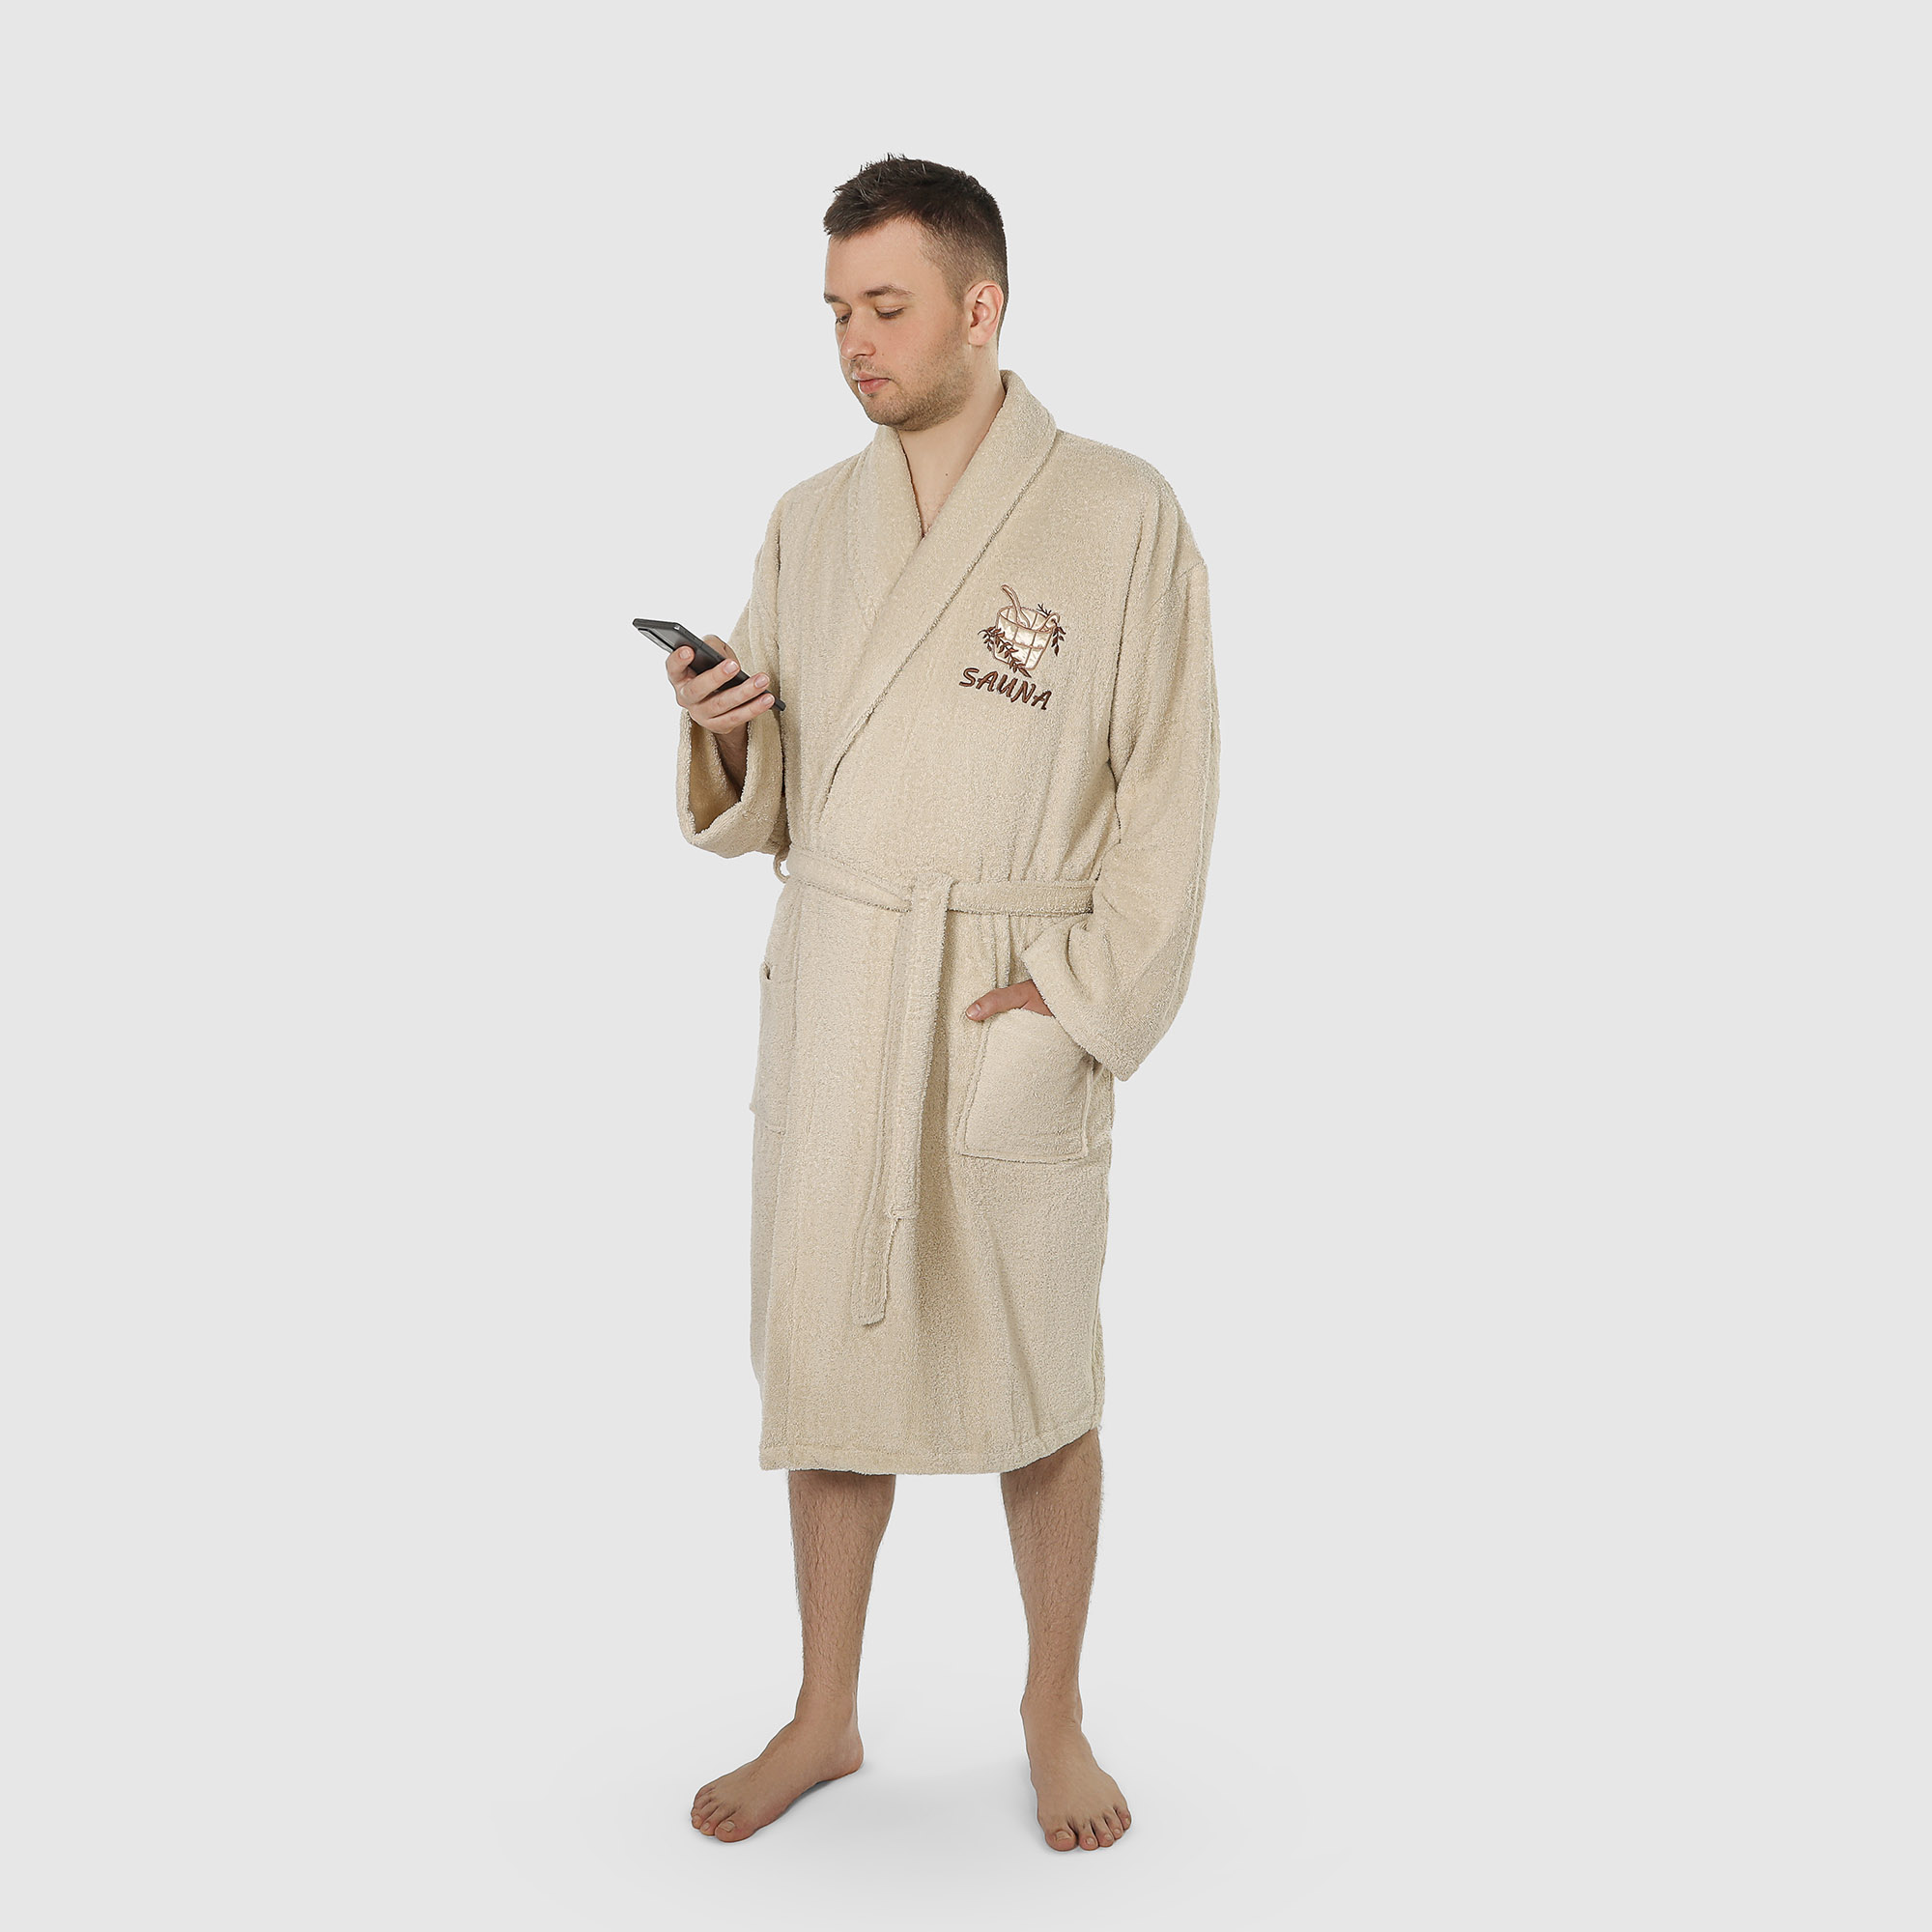 Халат мужской махровый Asil Sauna с воротником brown XL халат мужской asil sauna brown m махровый с капюшоном